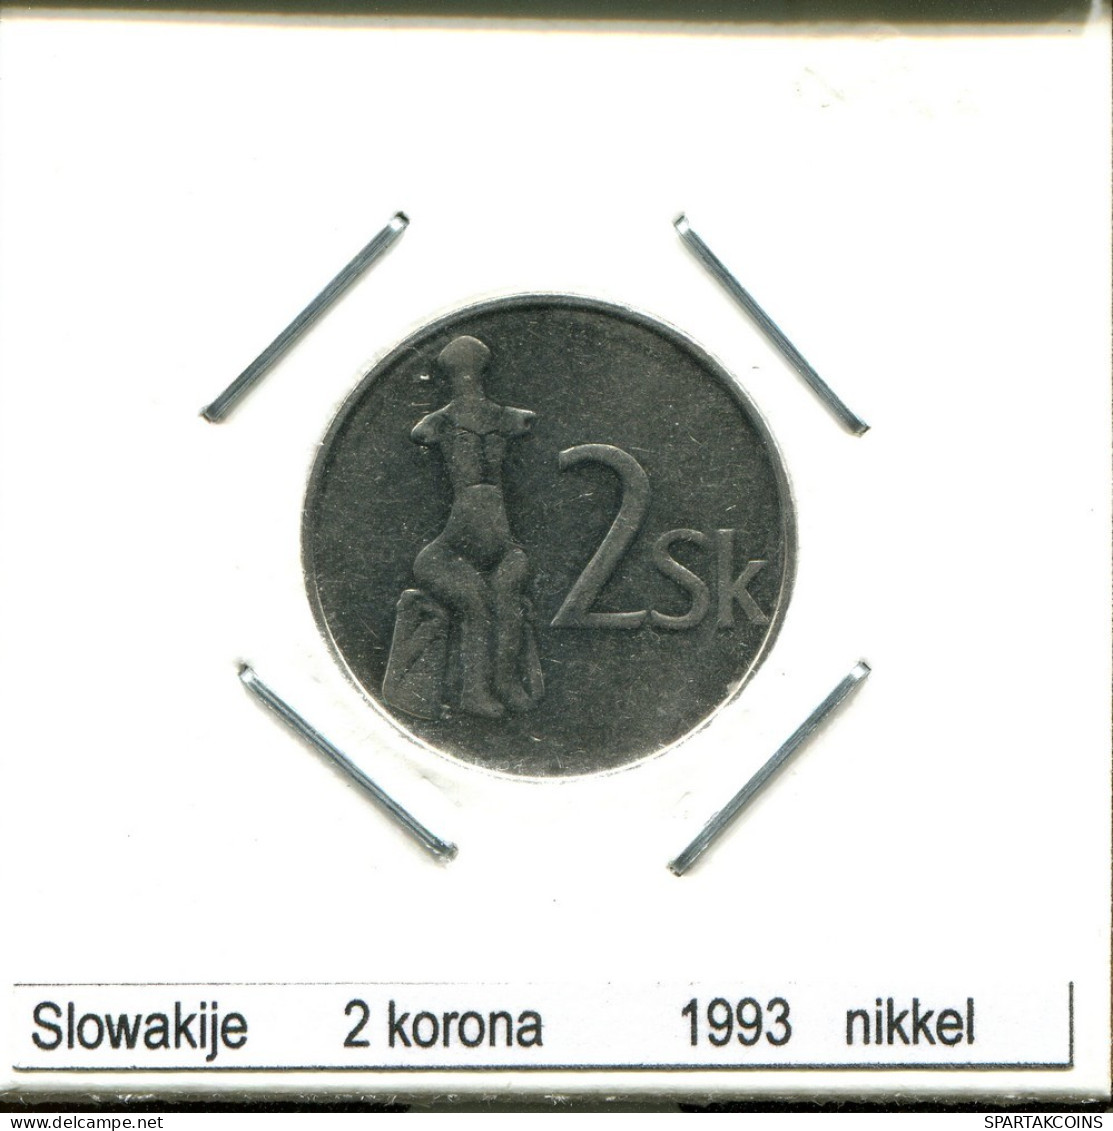 2 KORUN 1993 SLOVAQUIE SLOVAKIA Pièce #AS565.F.A - Slovacchia